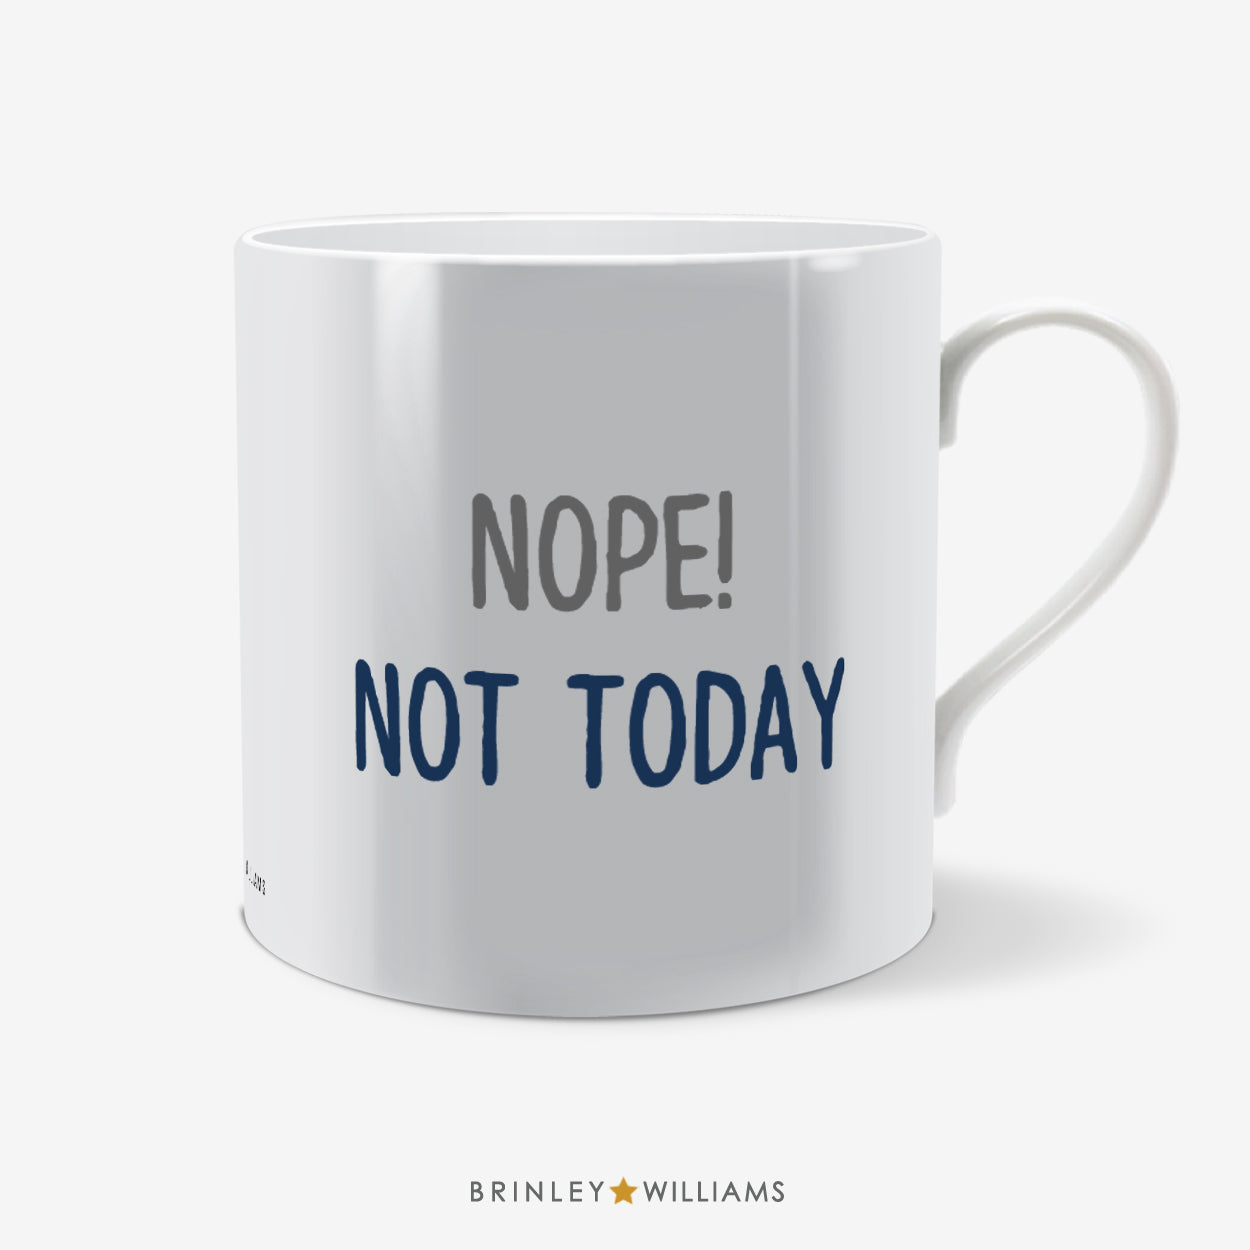 Nope! Not Today Fun Mug - Navy